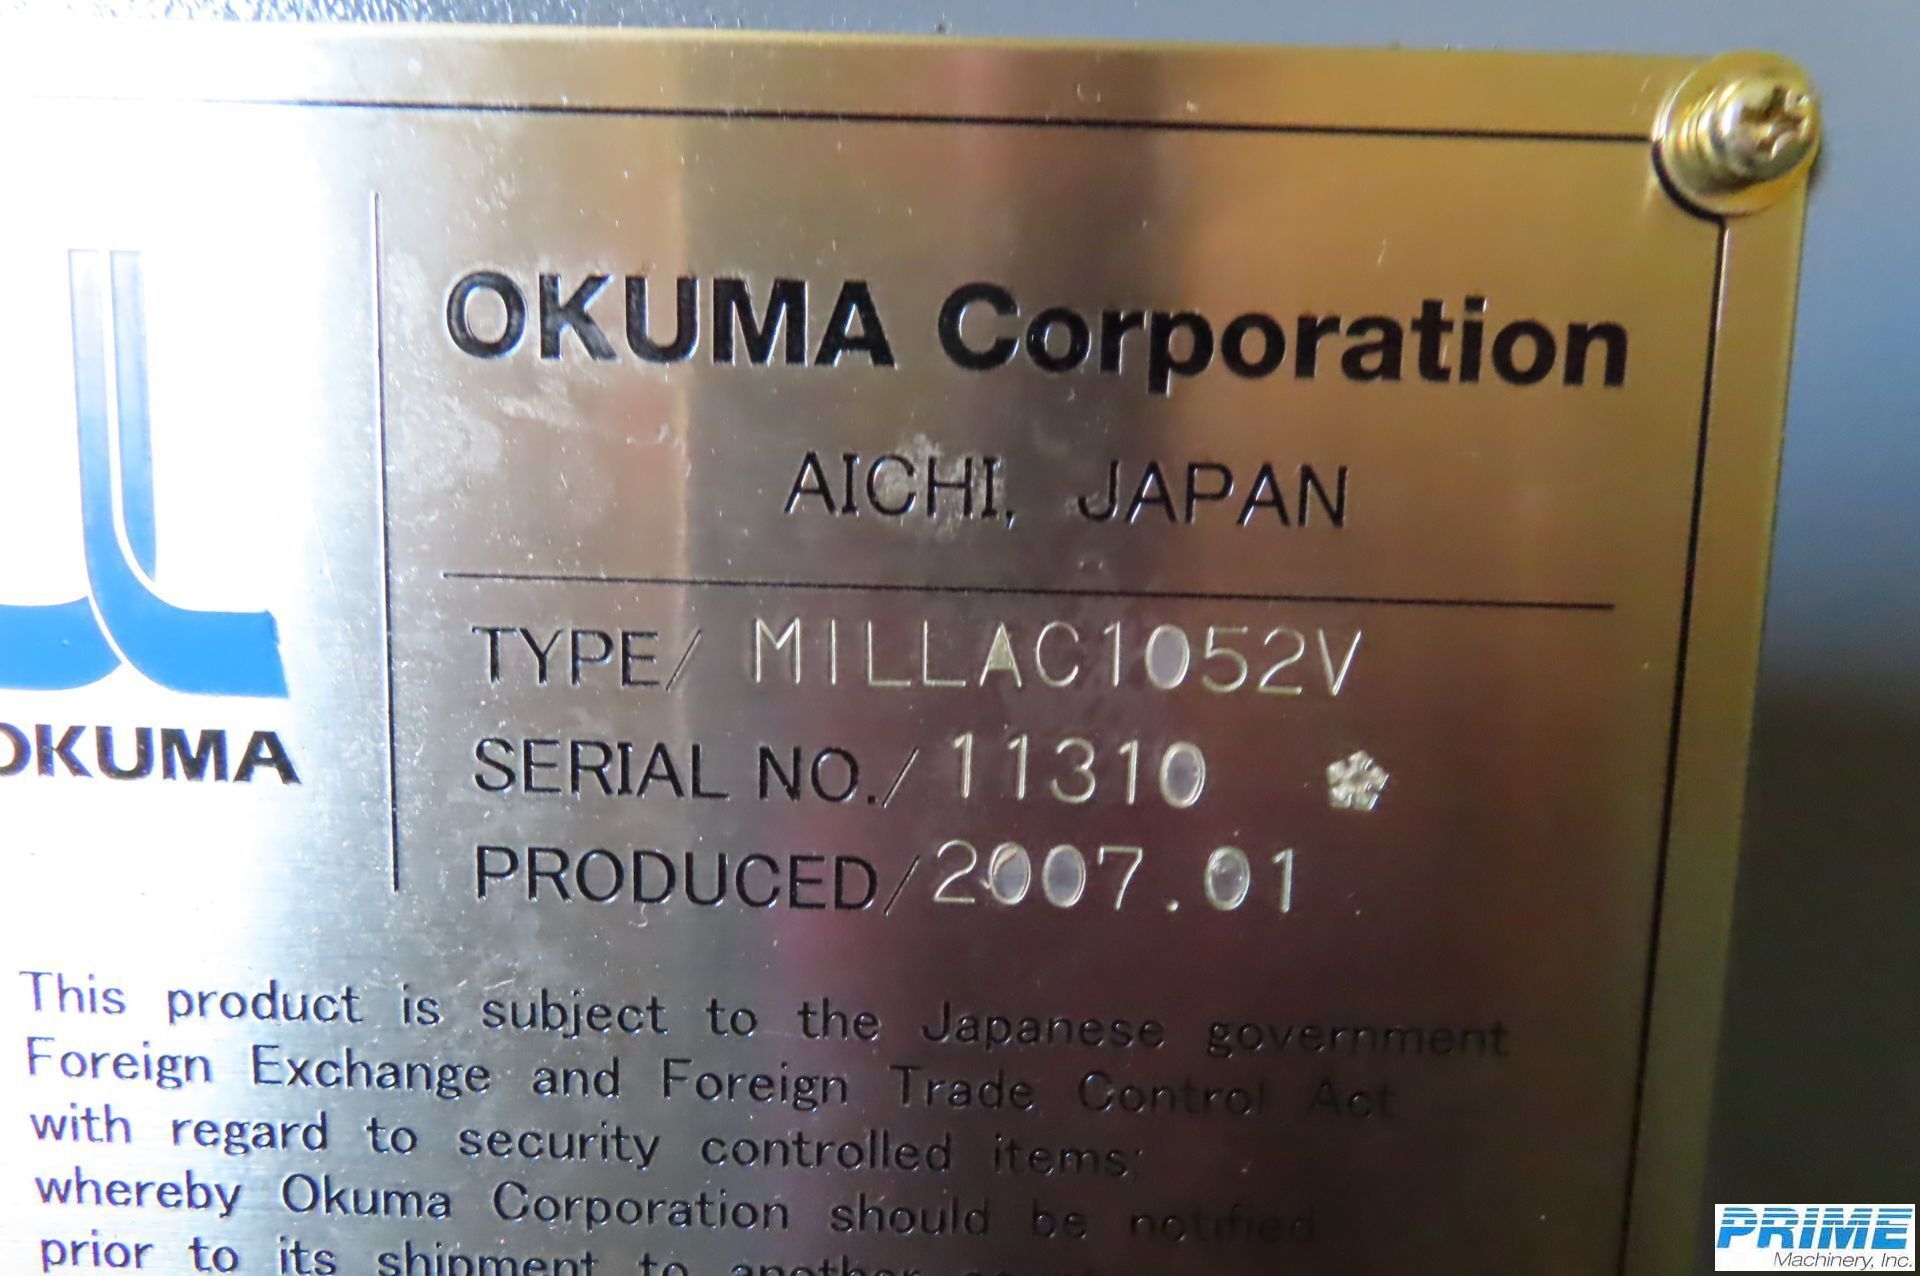 2007 OKUMA MILLAC 1052V MACHINING CENTERS, VERT., N/C & CNC | Prime Machinery